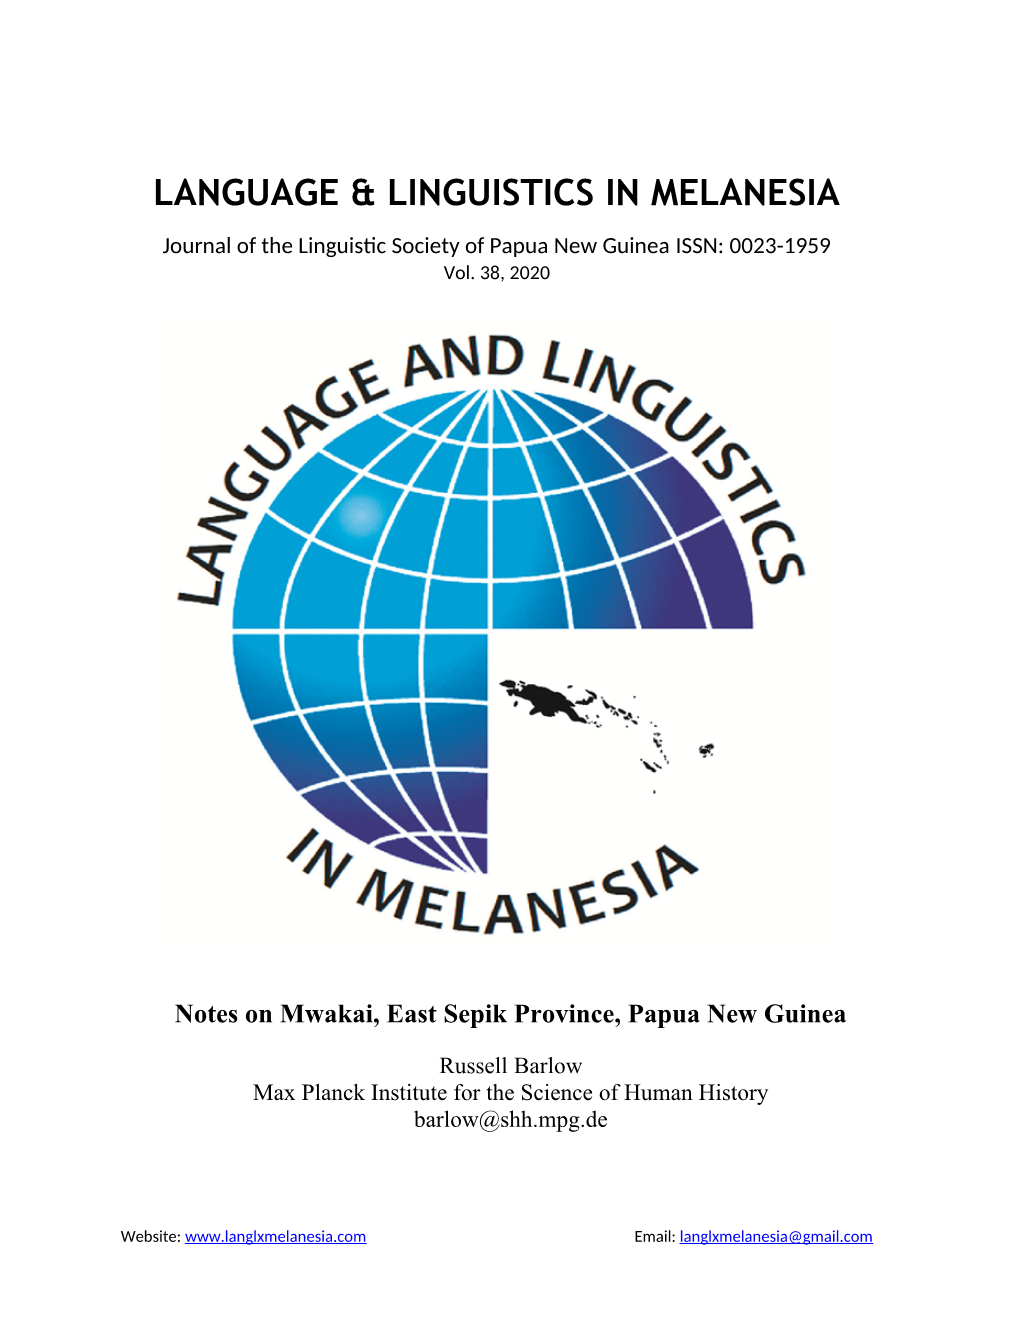 Language & Linguistics in Melanesia